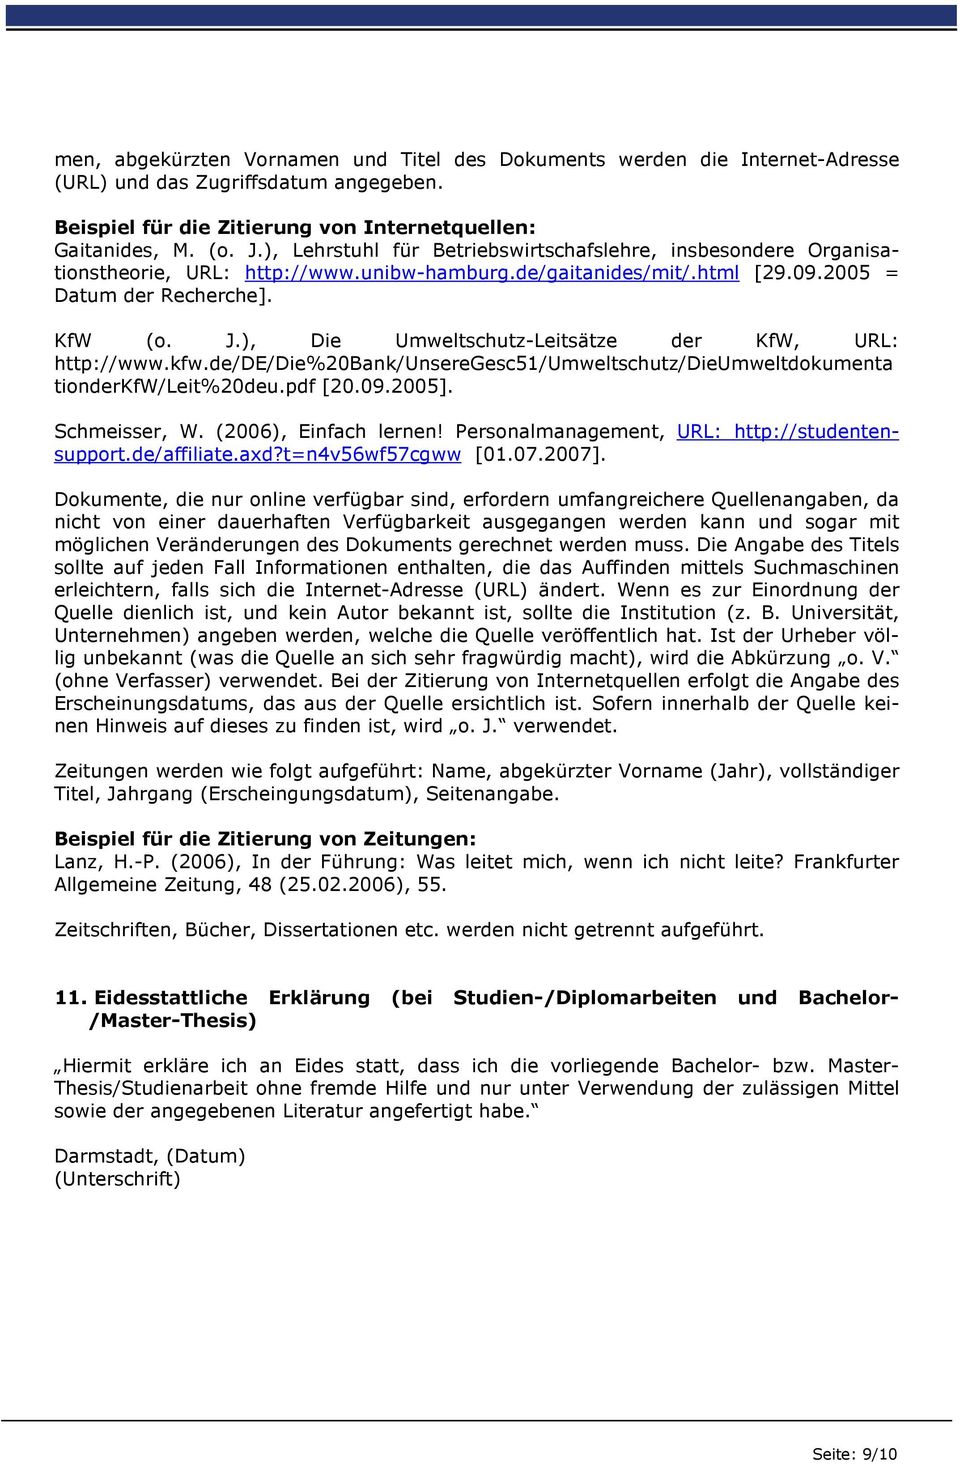 ), Die Umweltschutz-Leitsätze der KfW, URL: http://www.kfw.de/de/die%20bank/unseregesc51/umweltschutz/dieumweltdokumenta tionderkfw/leit%20deu.pdf [20.09.2005]. Schmeisser, W. (2006), Einfach lernen!